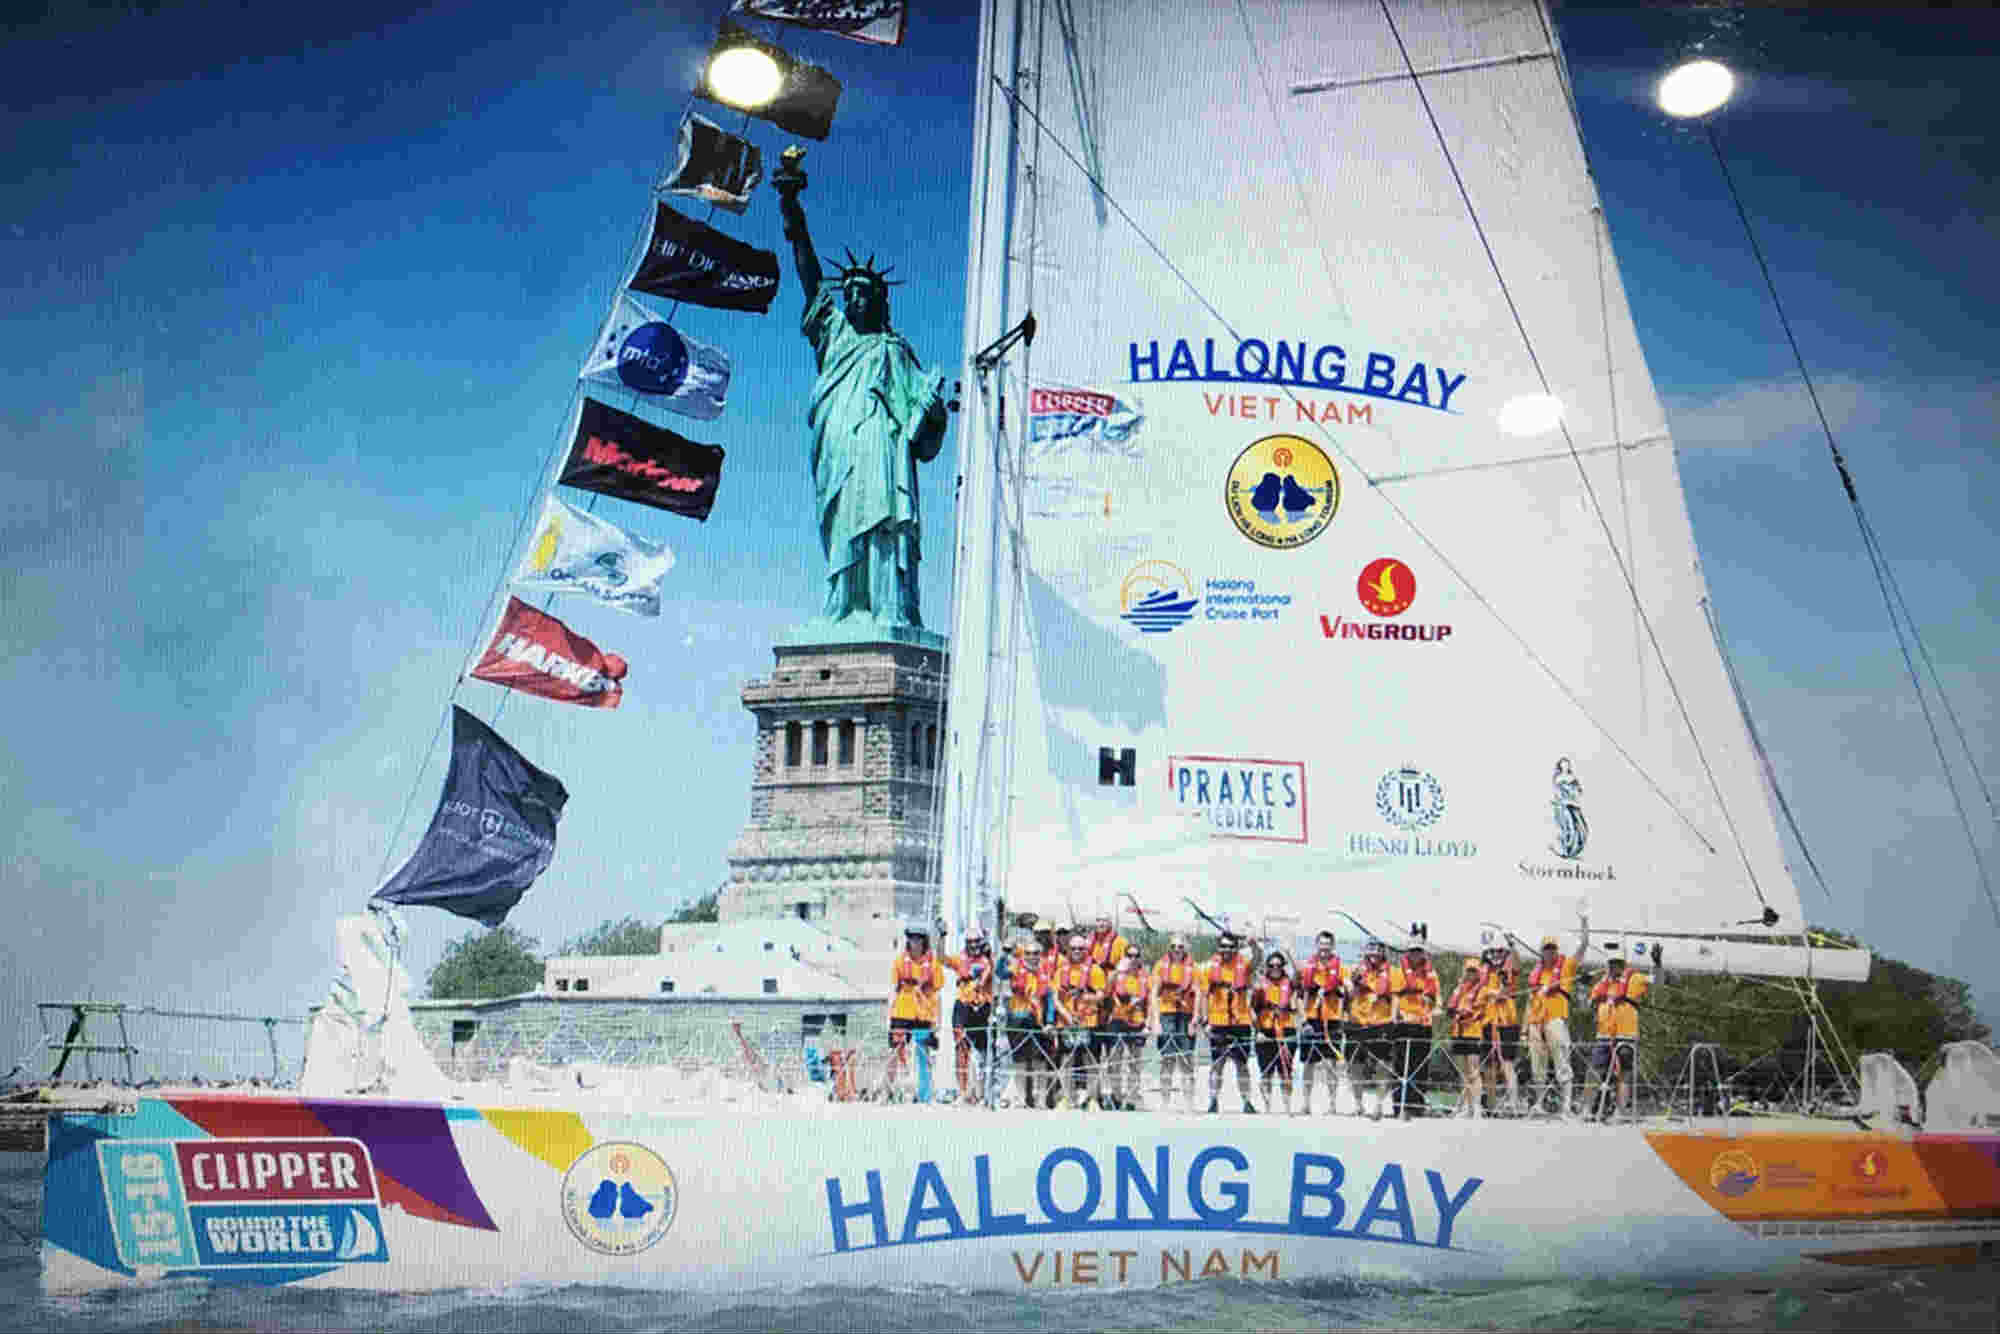 Hình ảnh phối cảnh minh họa đội đua Clipper Race 2019-2020 mang tên “Halong Bay - Viet Nam” của Quảng Ninh.